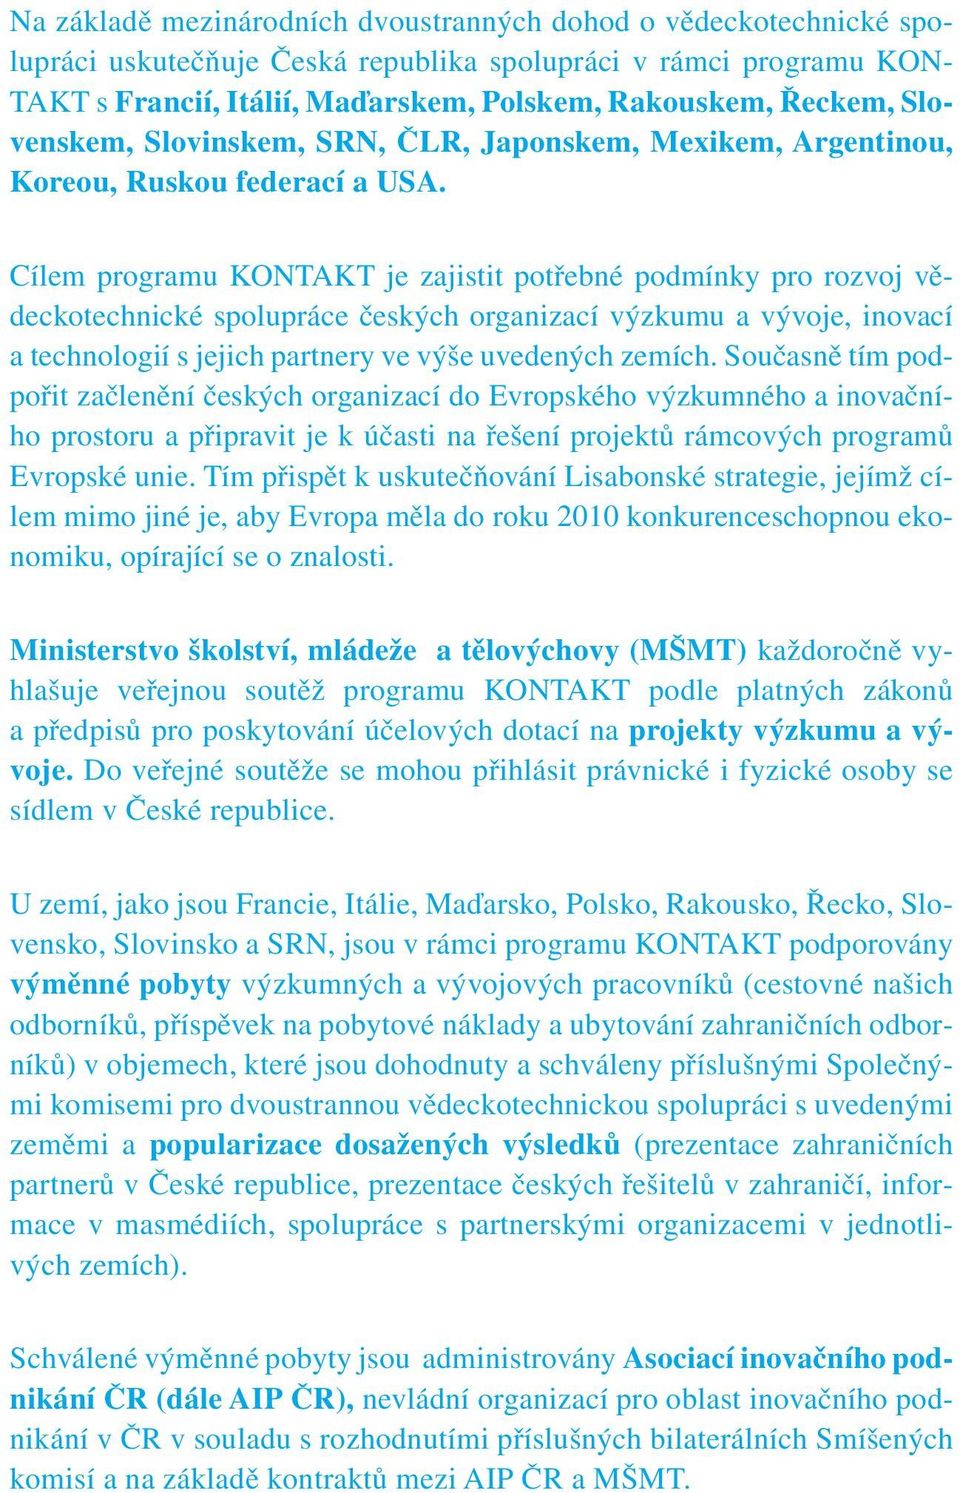 Cílem programu KONTAKT je zajistit potřebné podmínky pro rozvoj vědeckotechnické spolupráce českých organizací výzkumu a vývoje, inovací a technologií s jejich partnery ve výše uvedených zemích.